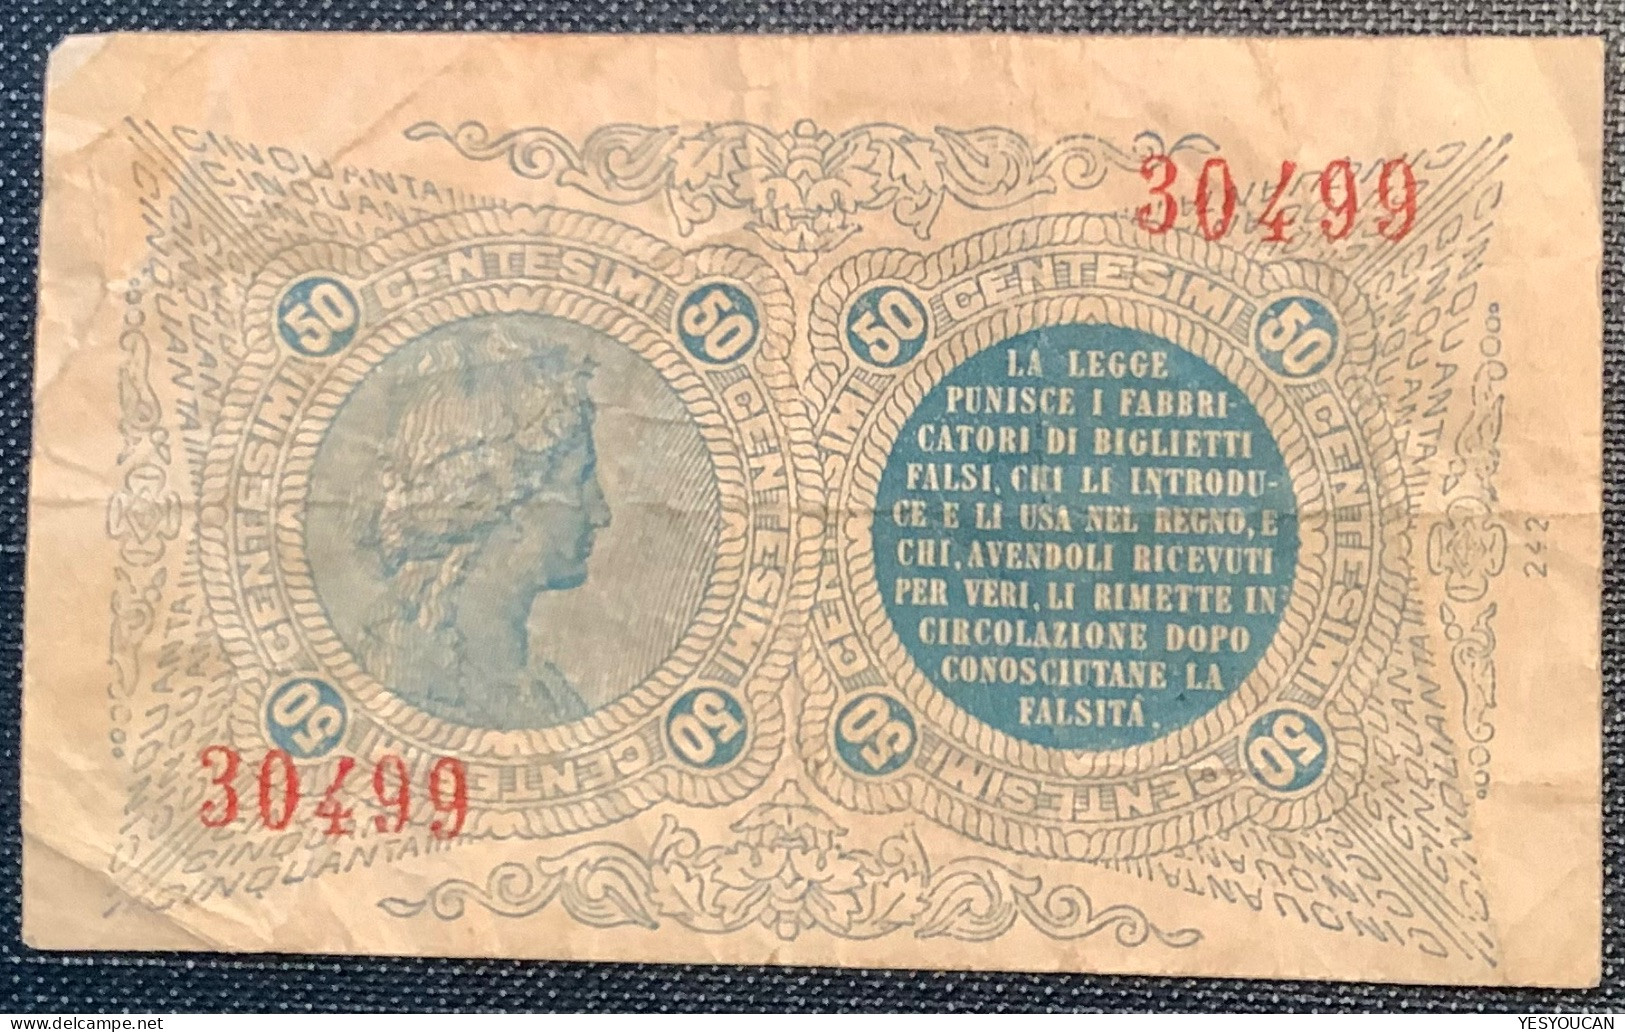 50 CENTESIMI BIGLIETTO CONSORZIALE REGNO D'ITALIA 30/04/1874 (Italy Banknote Paper Money - Biglietti Consorziale